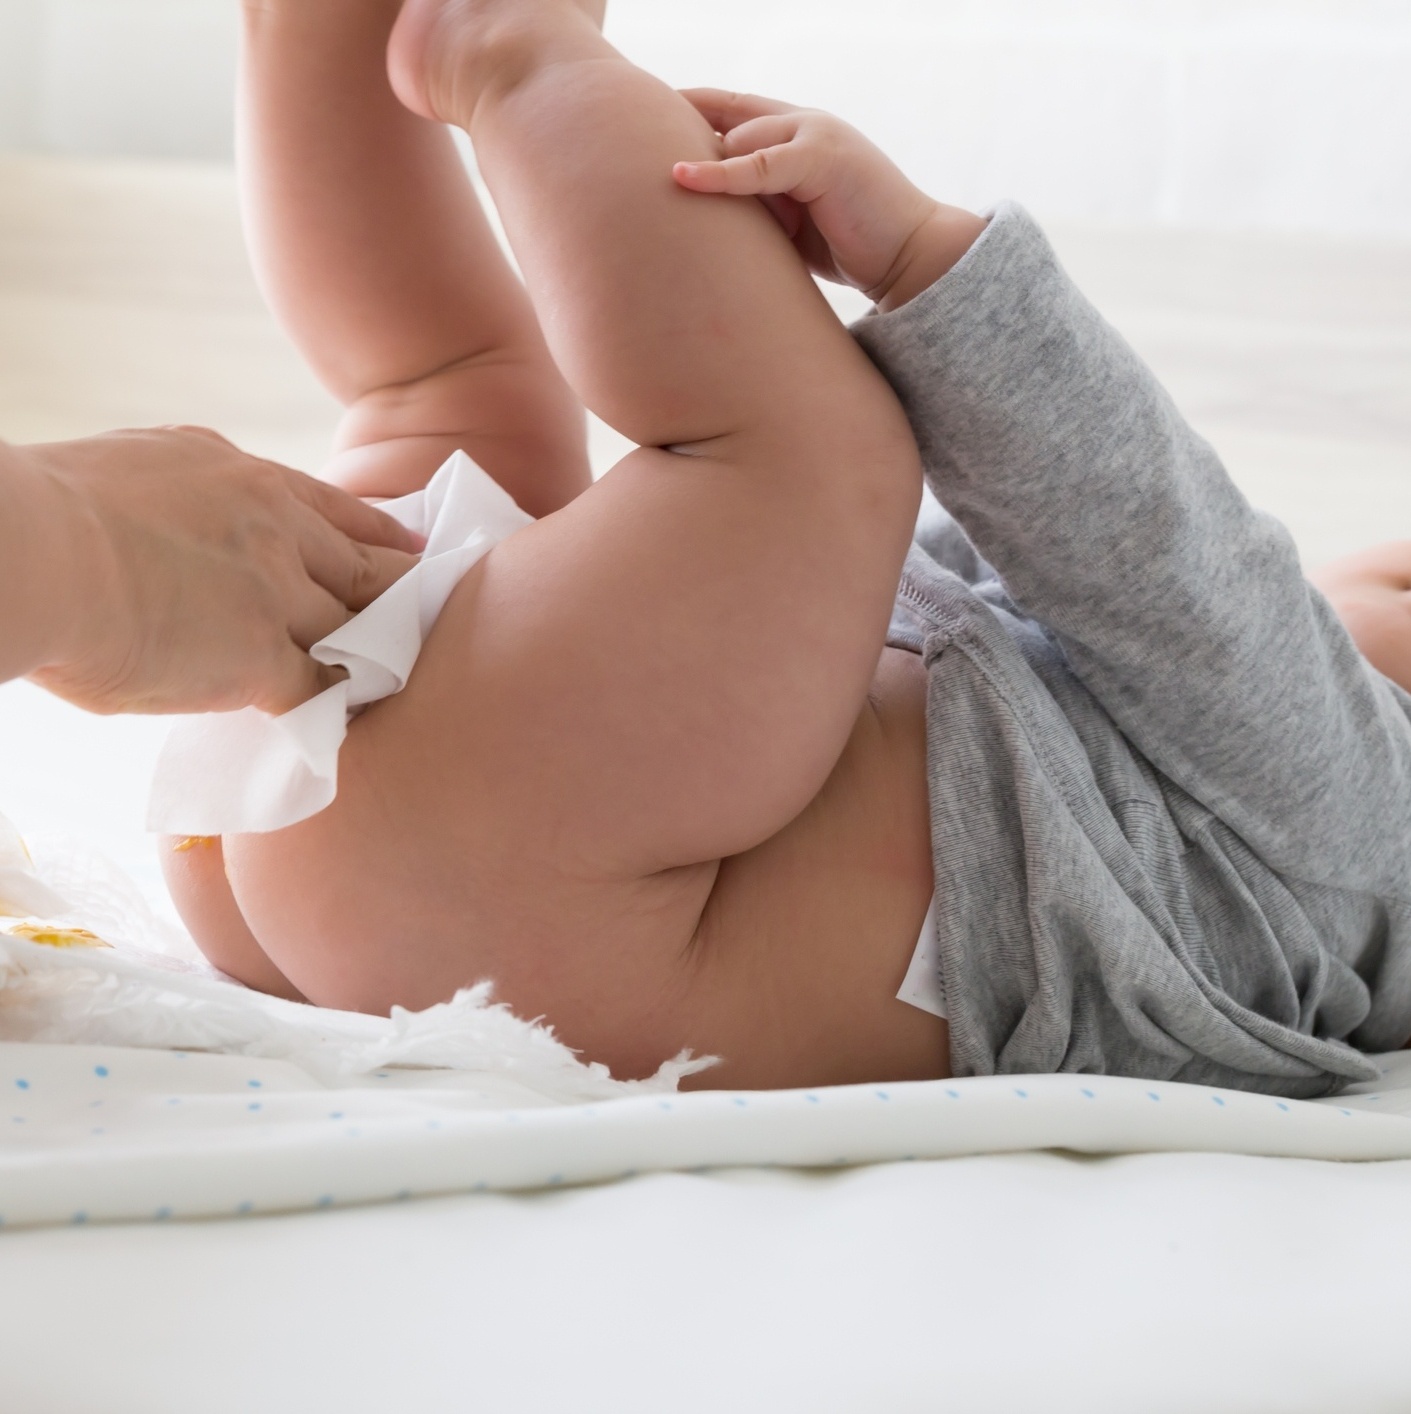 O cocô do bebê: o que você precisa saber nos primeiros meses de vida e  quando a constipação é sinal de alerta